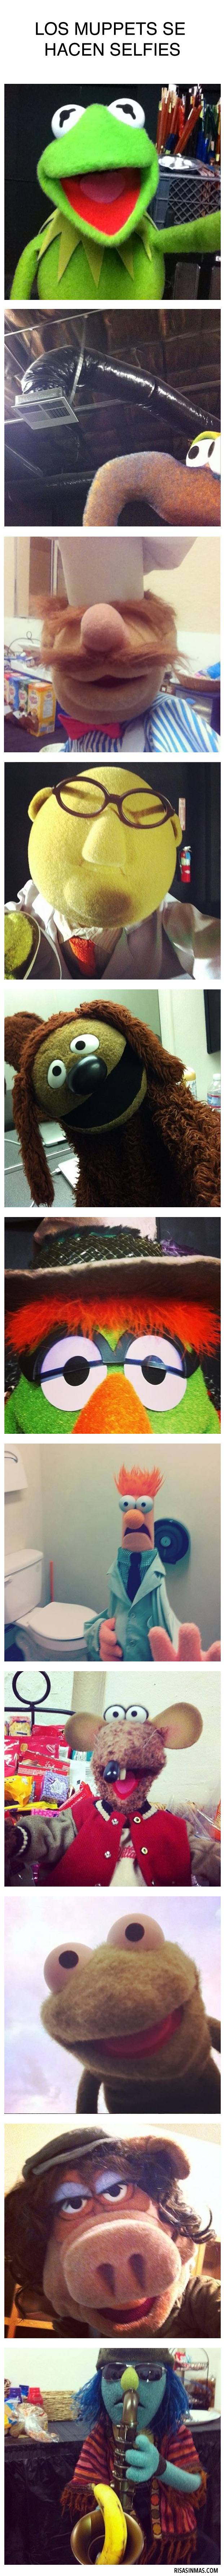 Los Muppets se hacen selfies